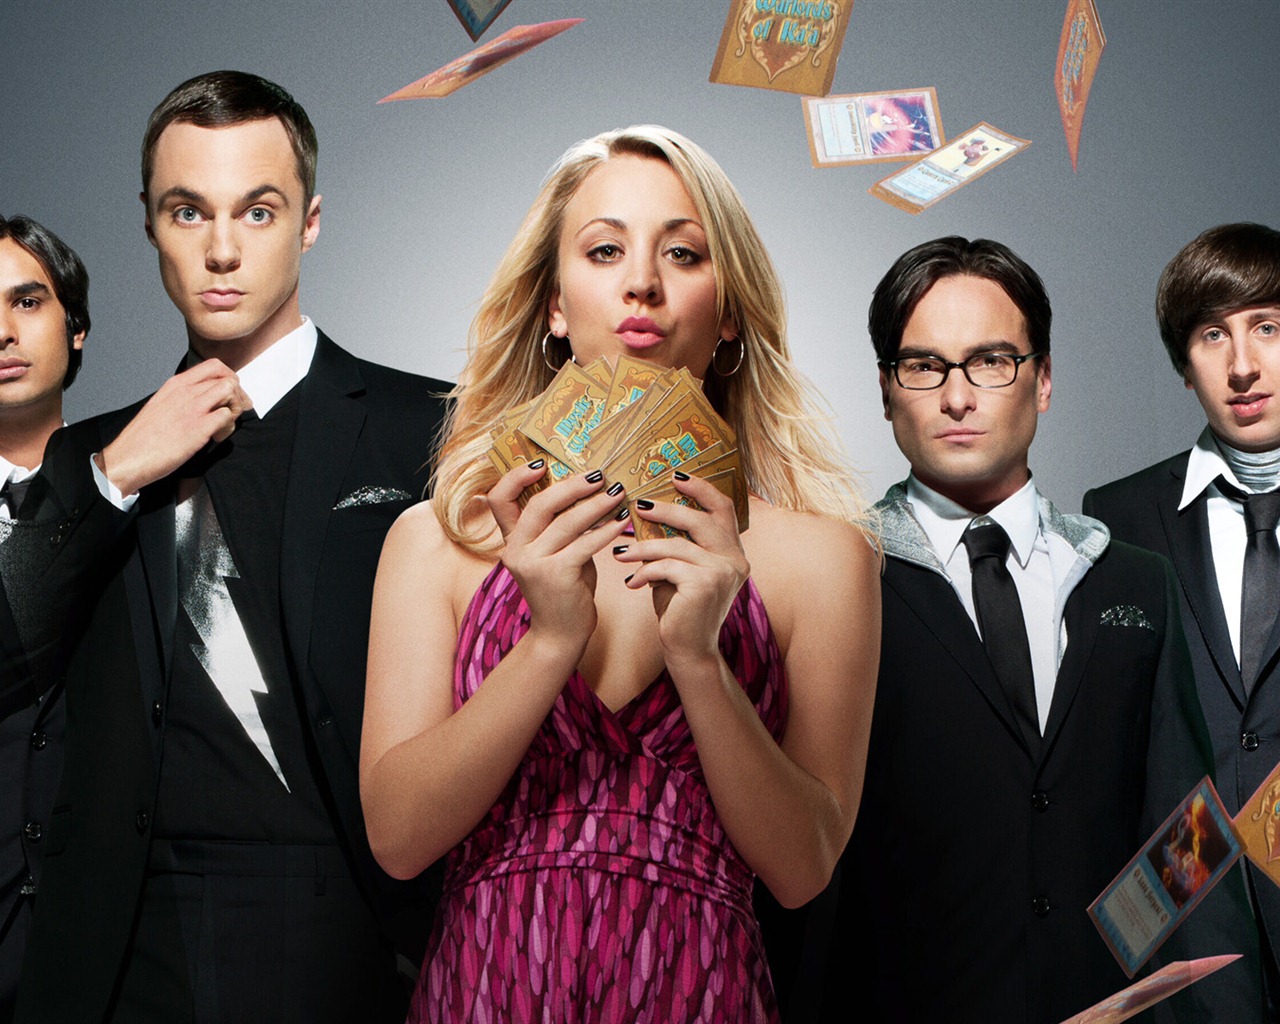 The Big Bang Theory 生活大爆炸 电视剧高清壁纸1 - 1280x1024